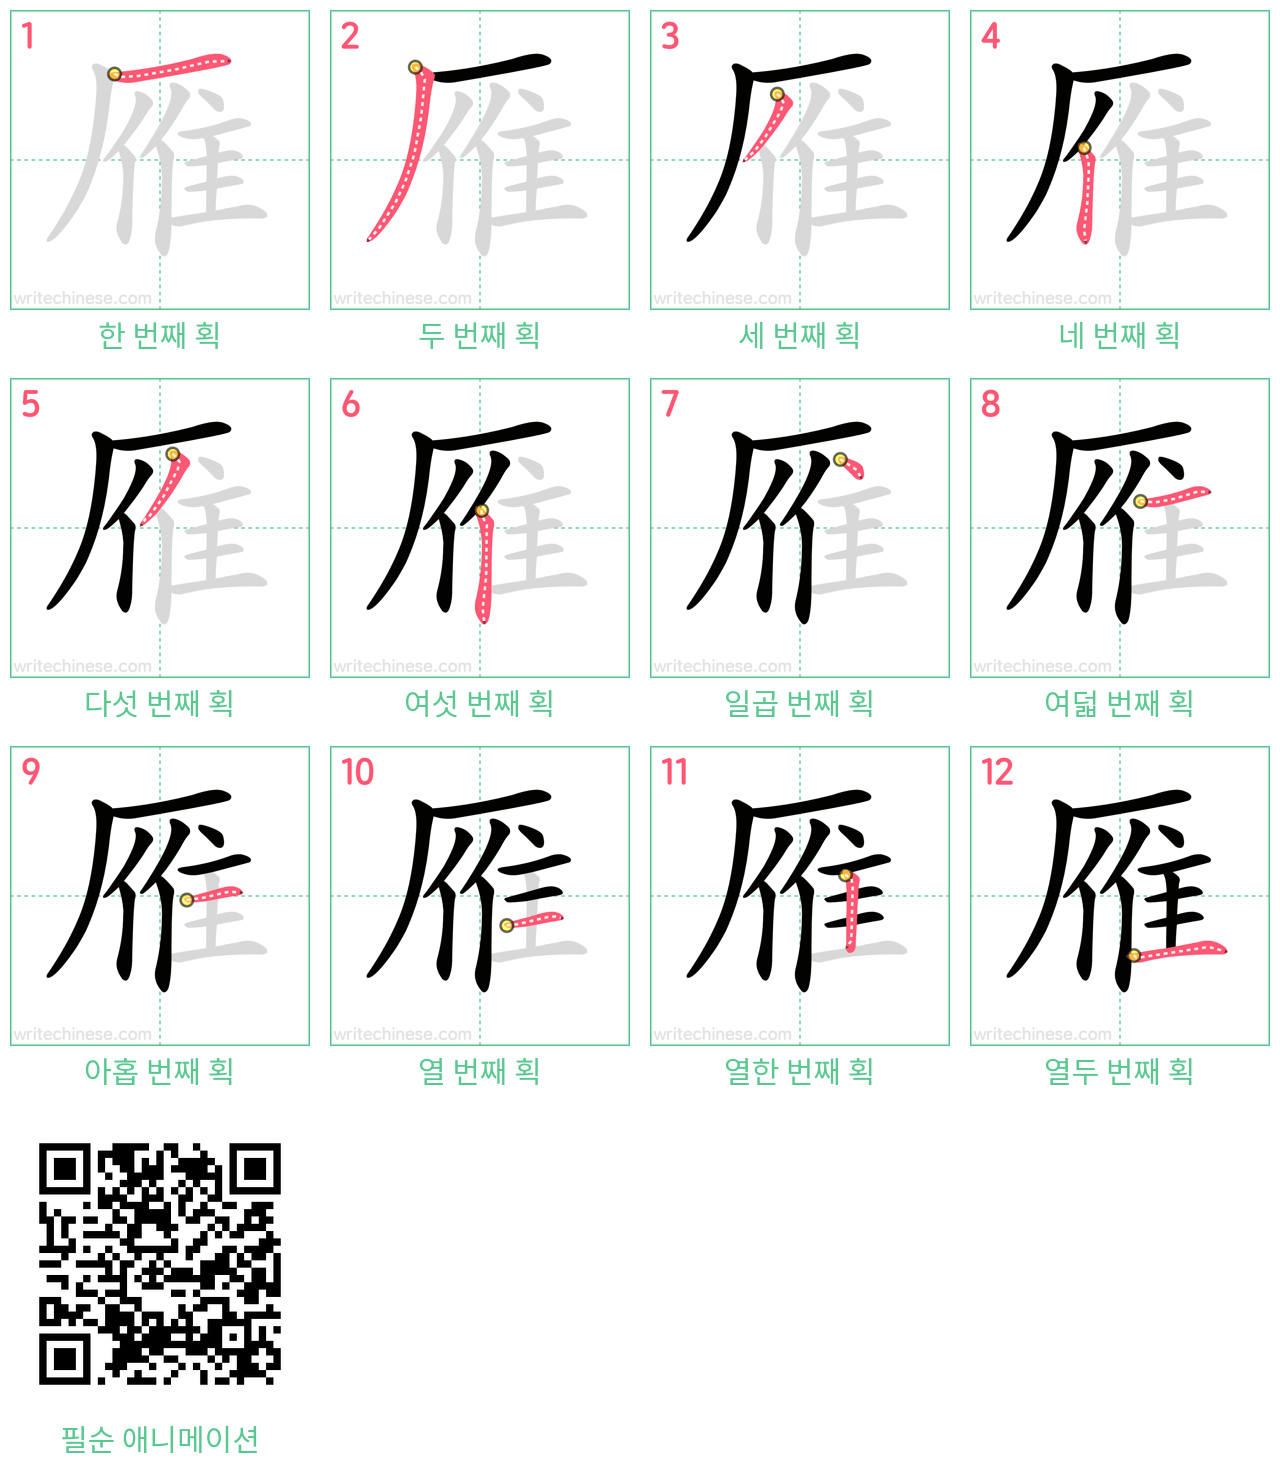 雁 step-by-step stroke order diagrams